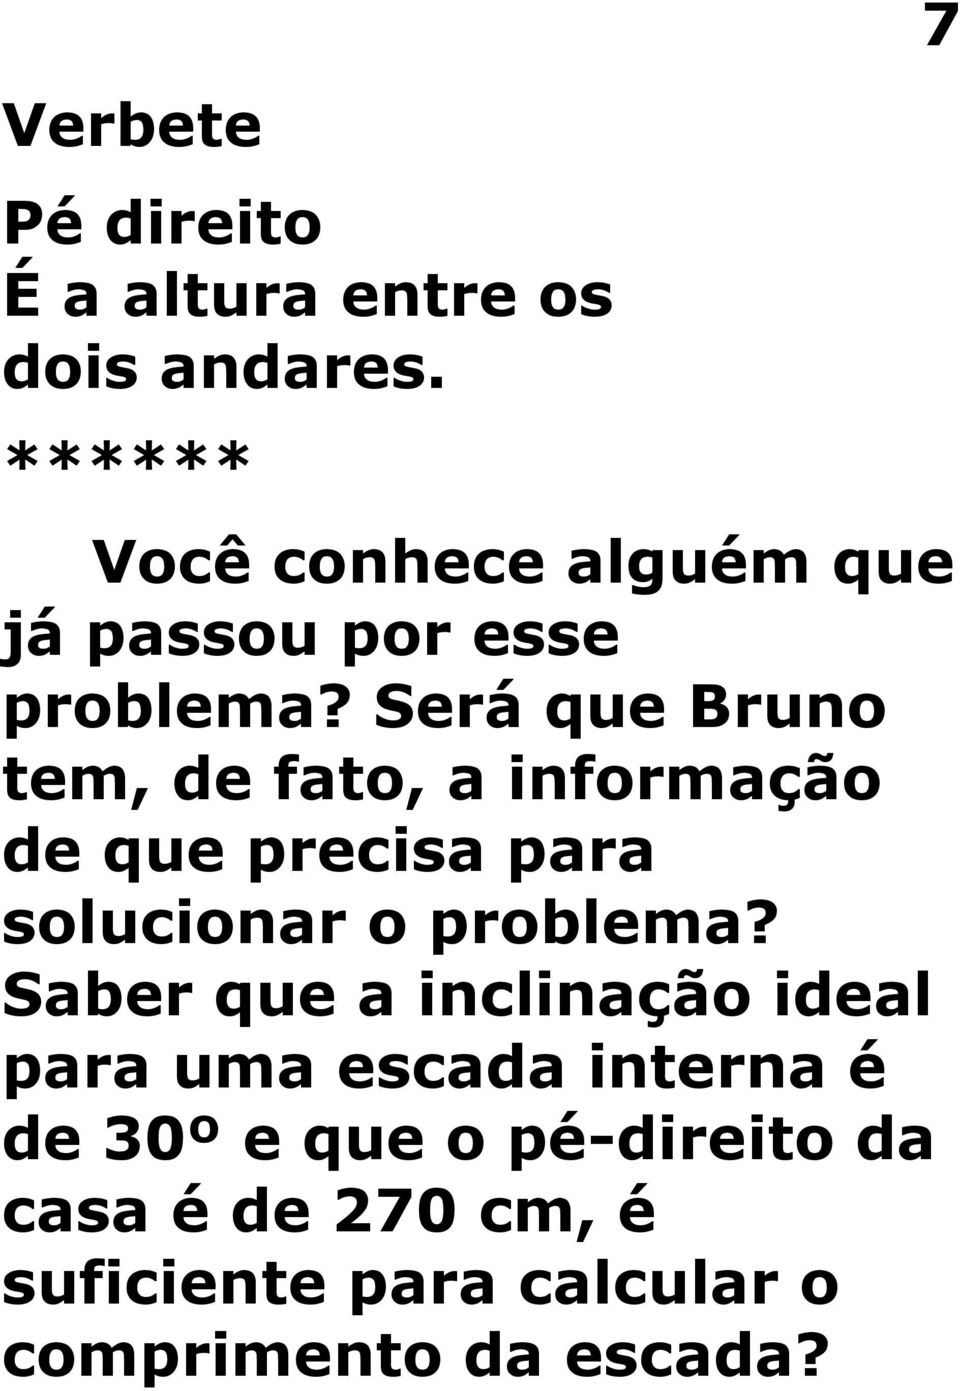 Será que Bruno tem, de fato, a informação de que precisa para solucionar o problema?